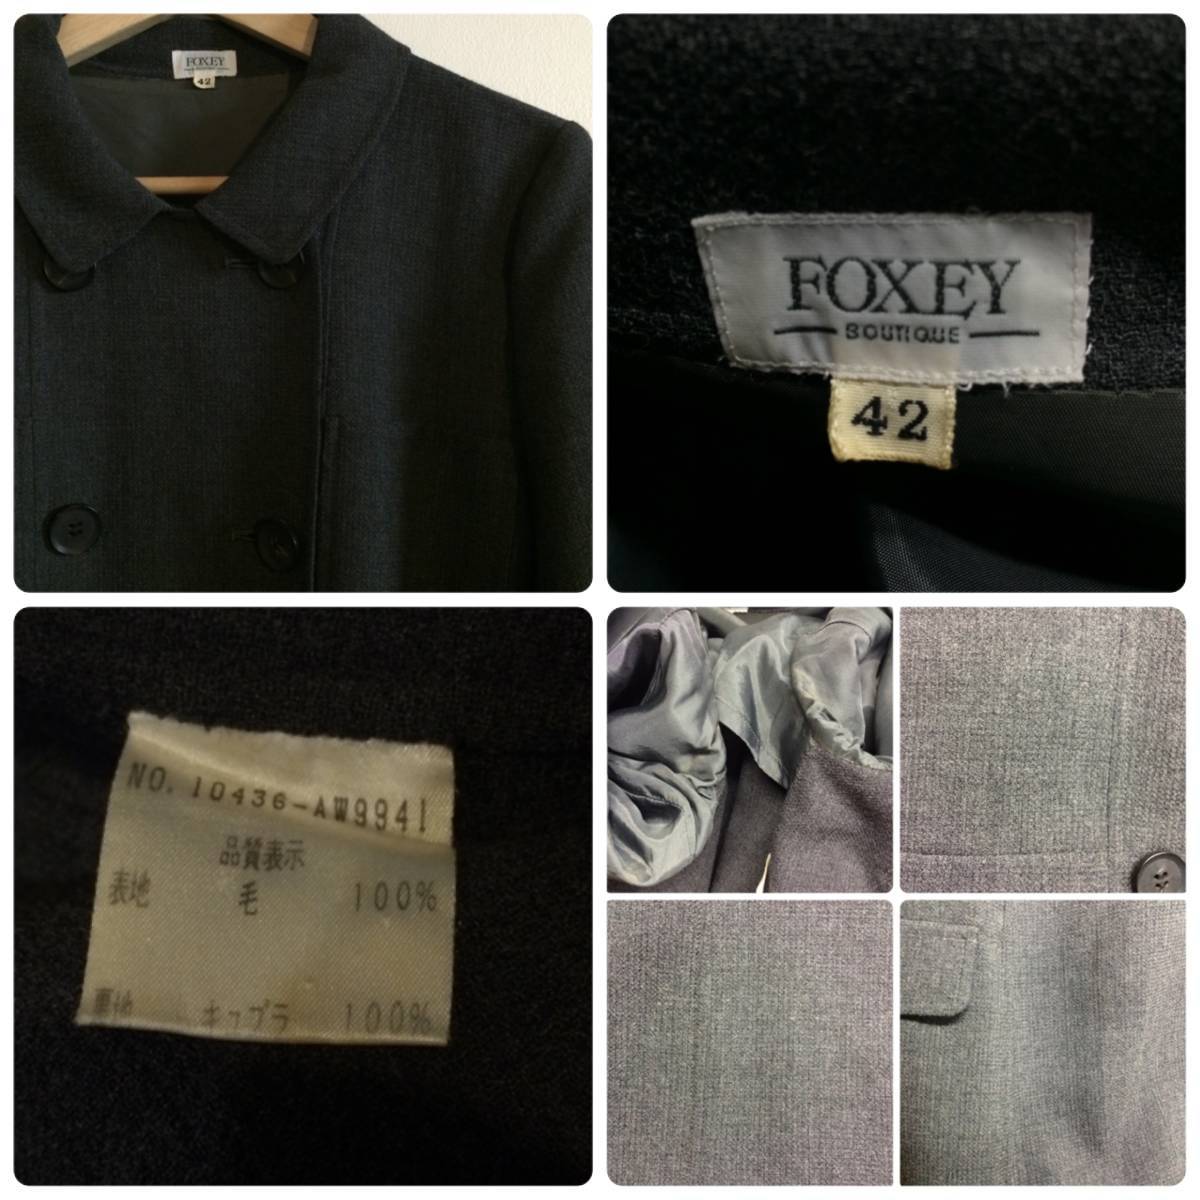 .../FOXEY  дизайн  двойной  ... отдых   пиджак 42